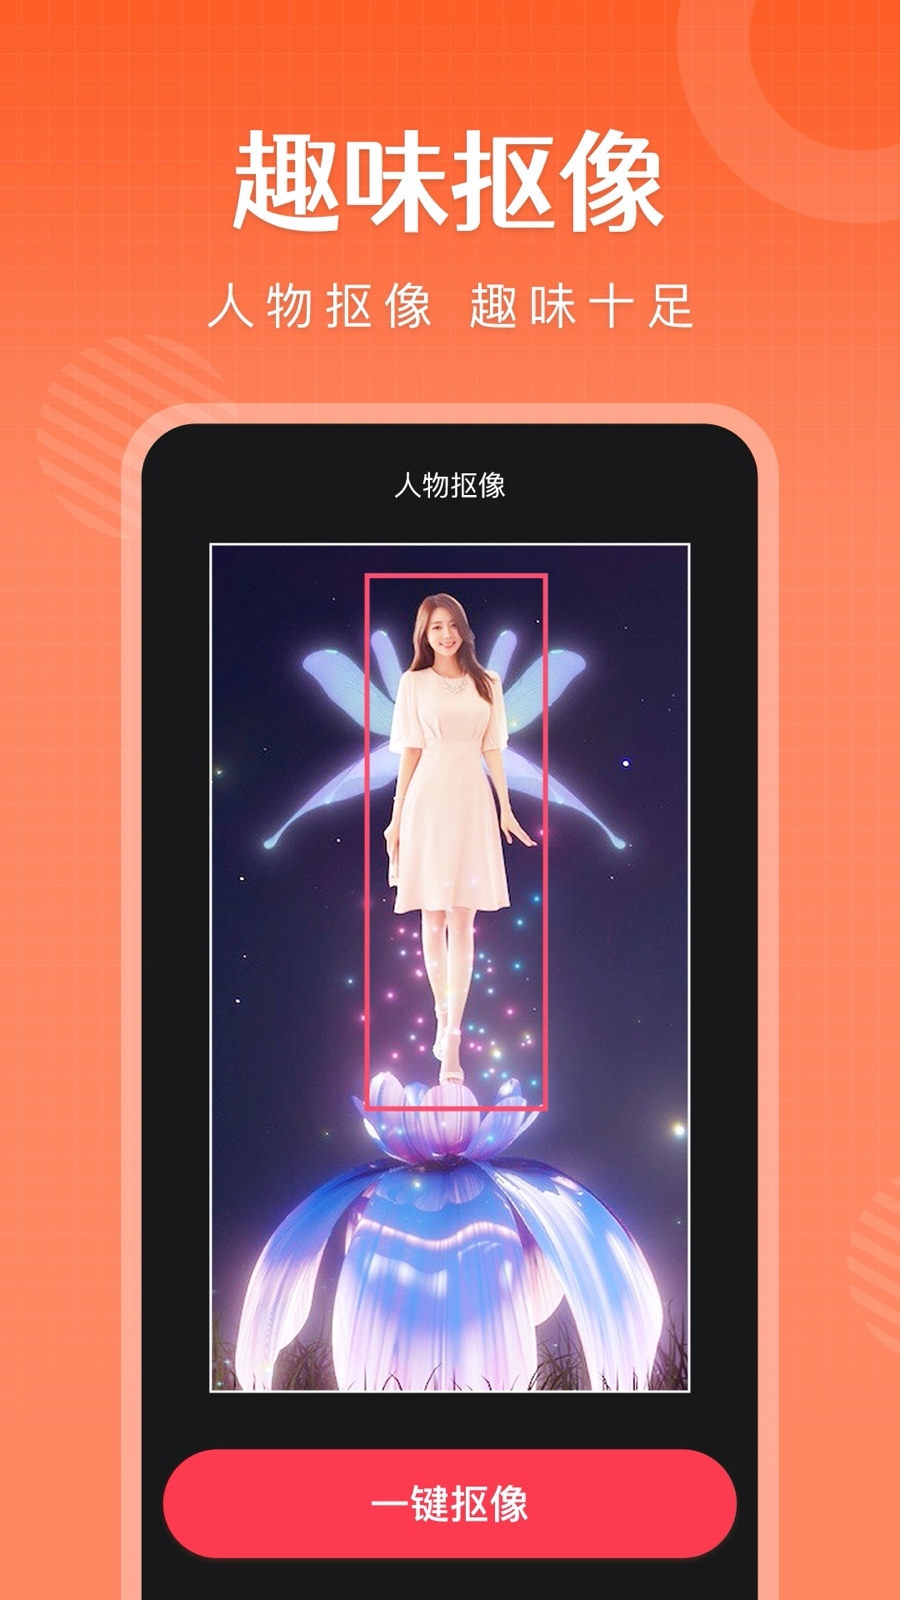 简影下载 简影手机版22官方下载 最新简影app下载安装